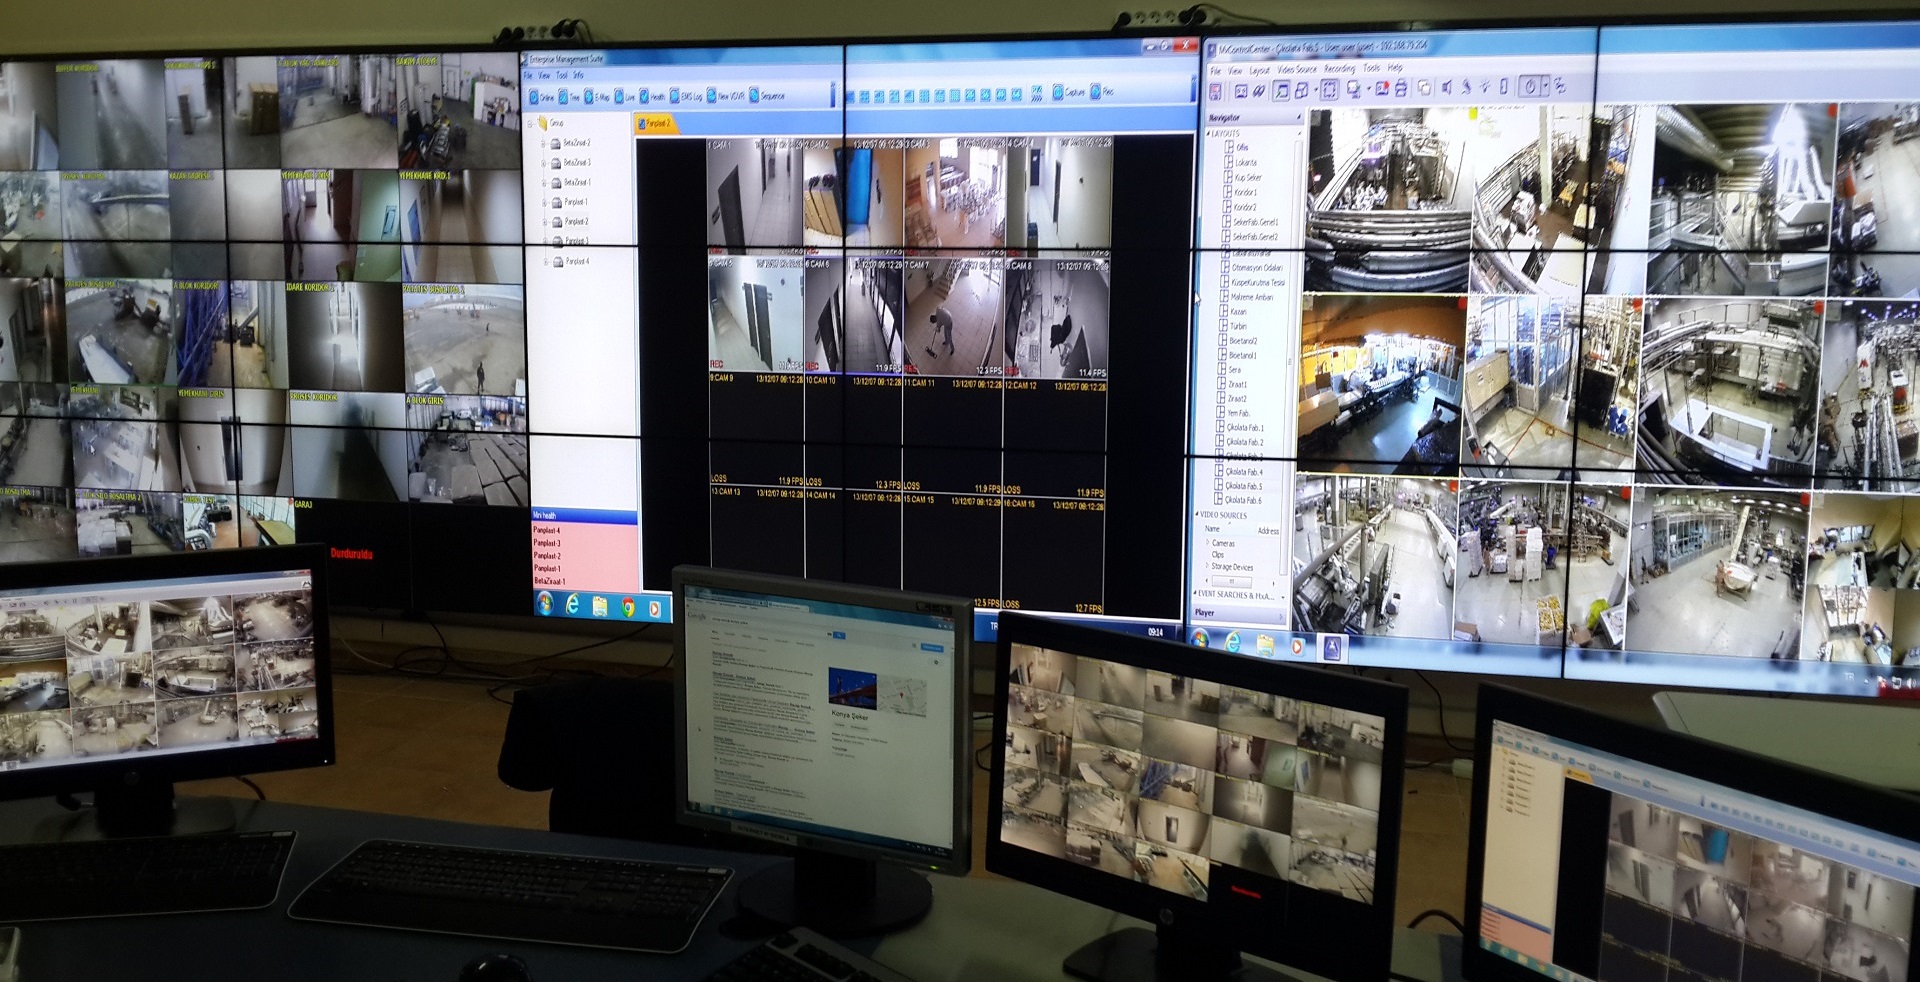 Konya Şeker CCTV Videowall Project